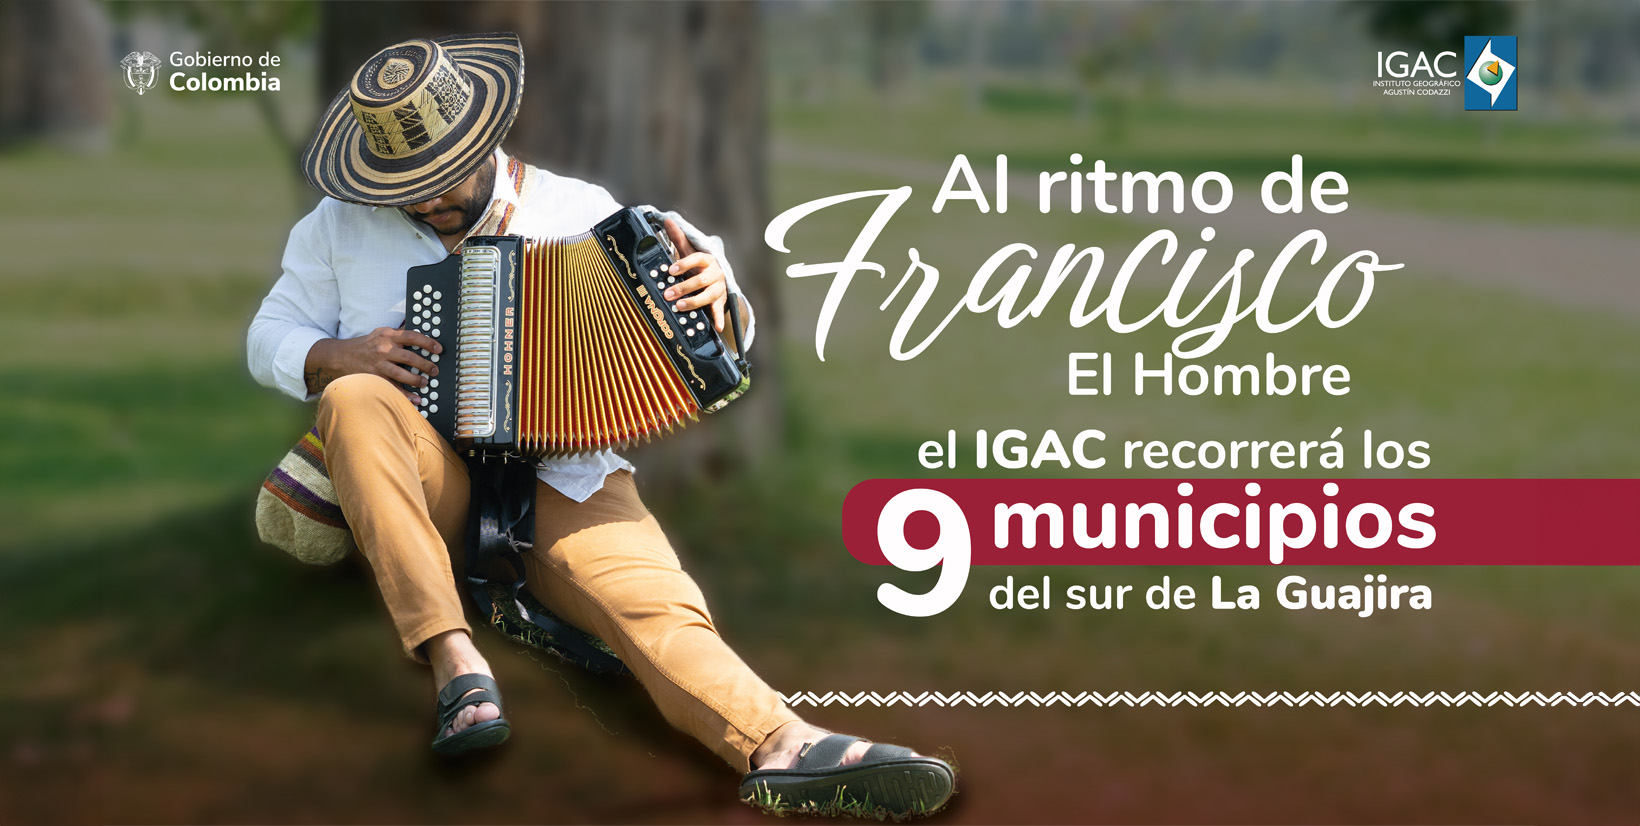 Al ritmo de Francisco El Hombre, el IGAC recorrerá  9 municipios del sur de La Guajira